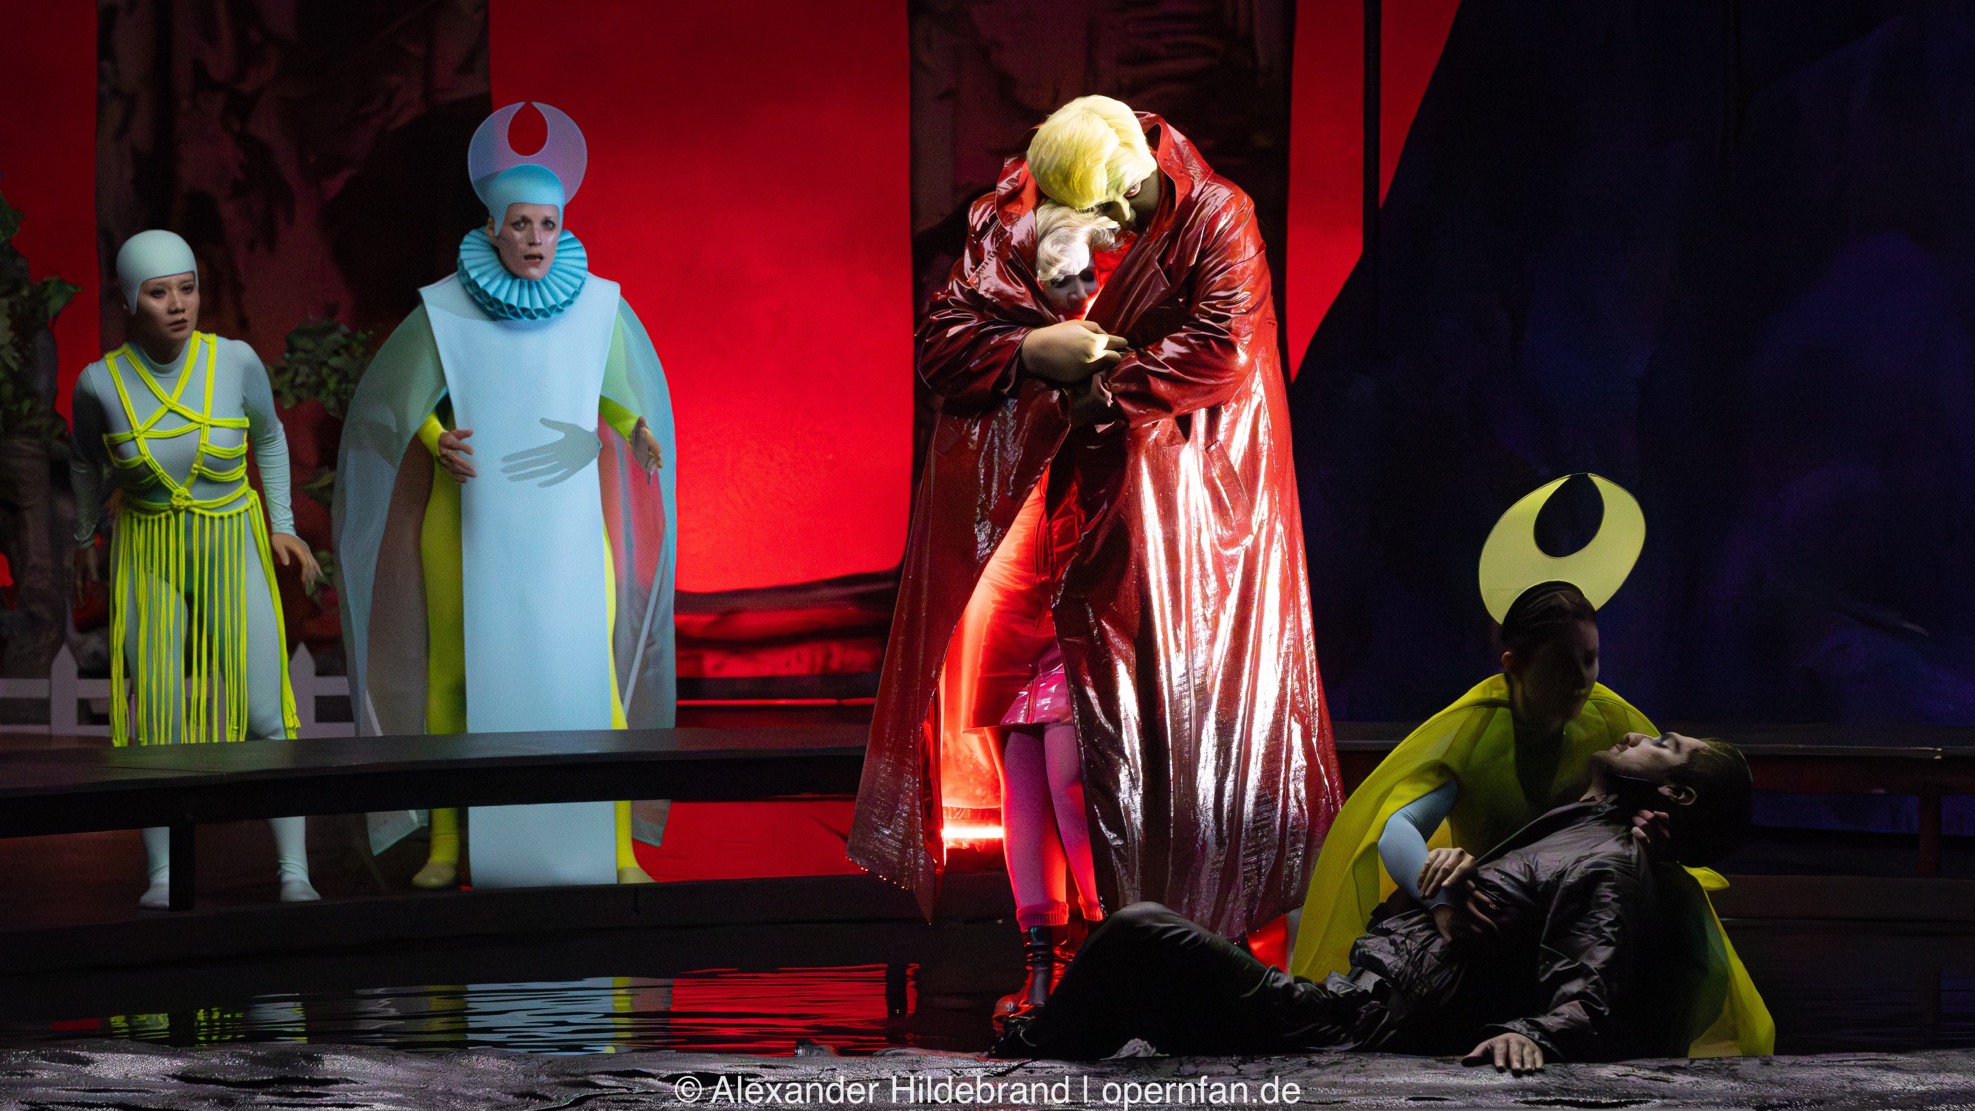 Das Ende der Oper "Il Tabarro". Die Schwestern der zweiten Oper "Suor Angelica" kommen langsam auf die Szene. | Foto © Alexander Hildebrand | opernfan.de | IMG 1776 Enh